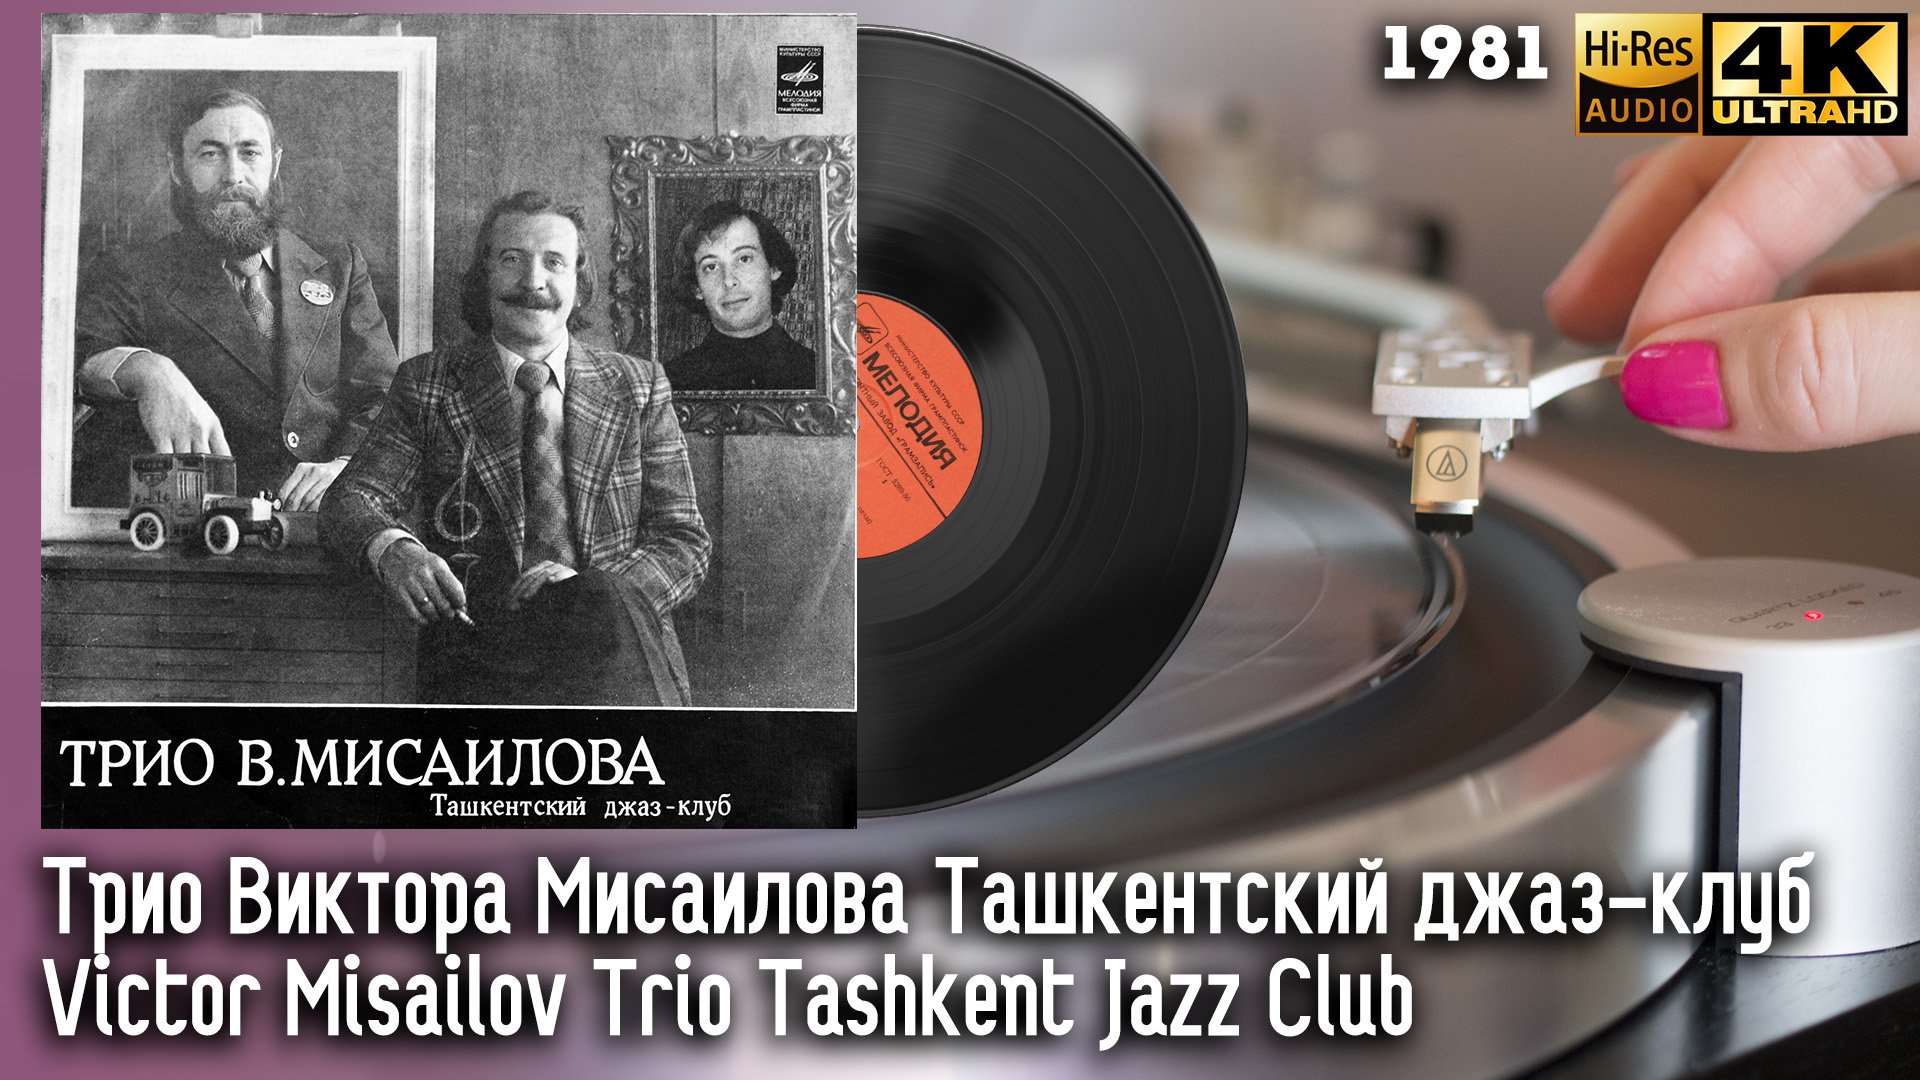 Трио Виктора Мисаилова Ташкентский джаз-клуб / Victor Misailov Trio Tashkent Jazz Club, Vinyl, HiRes